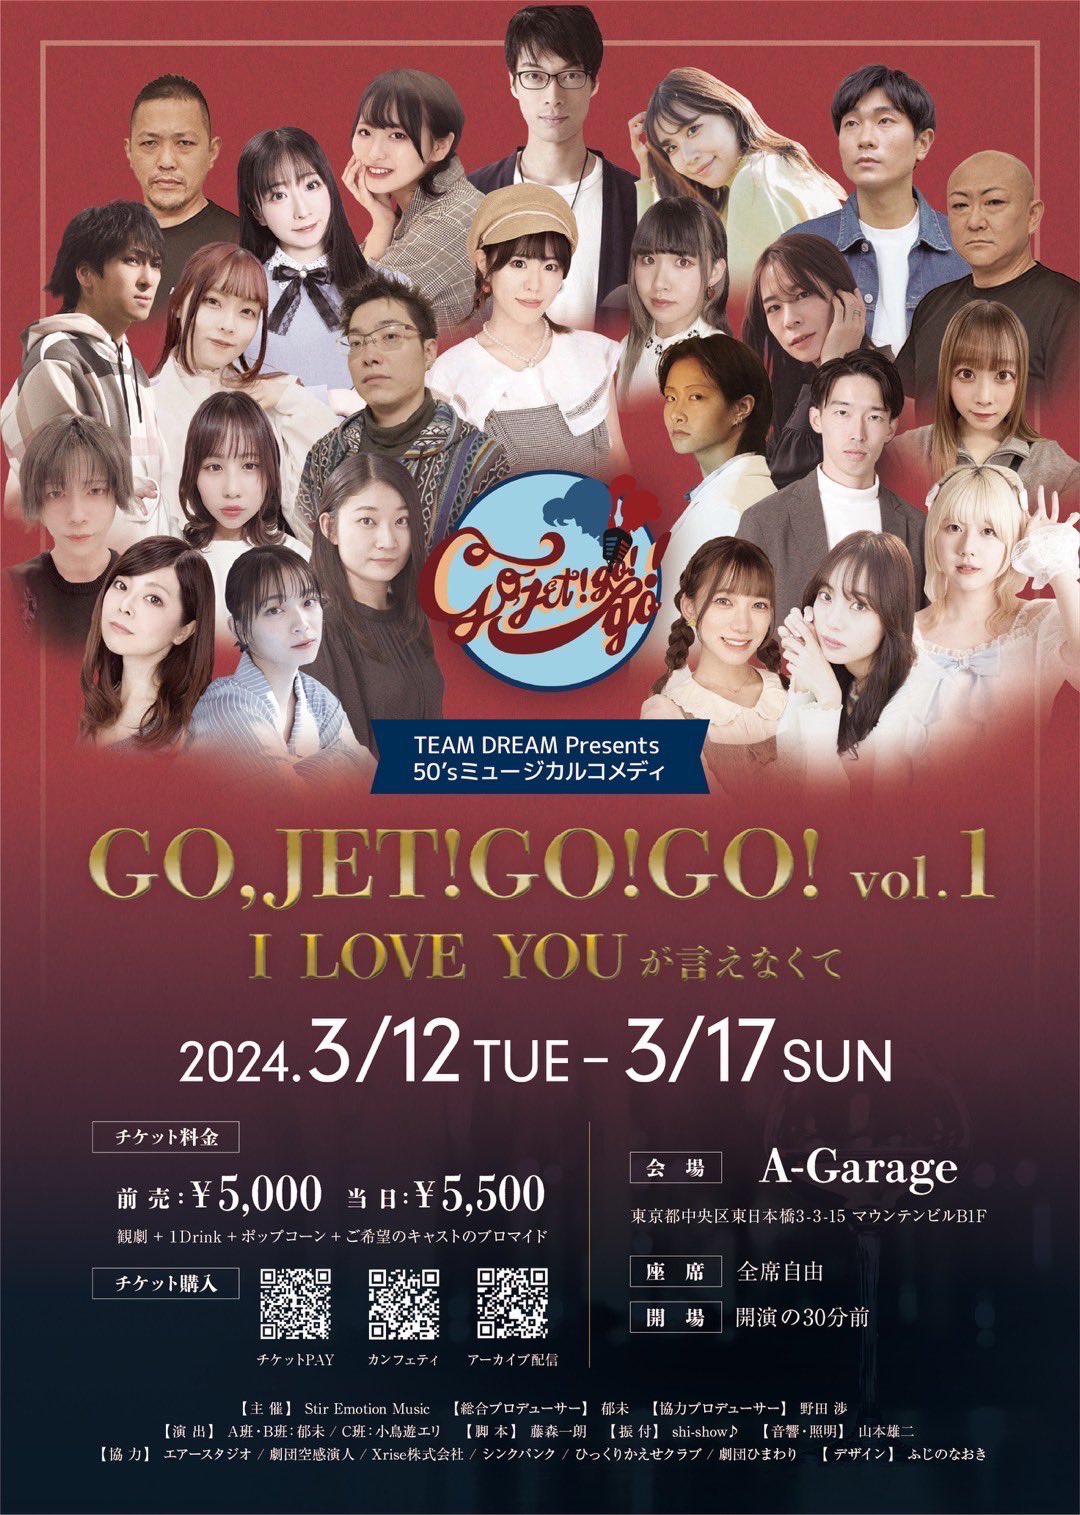 3月12日(日)～3月17日(日) TEAM DREAM Presents「GO,JET!GO!GO!vol. 1～I LOVE YOUが言えなくて～」にC班美月役で出演します!!